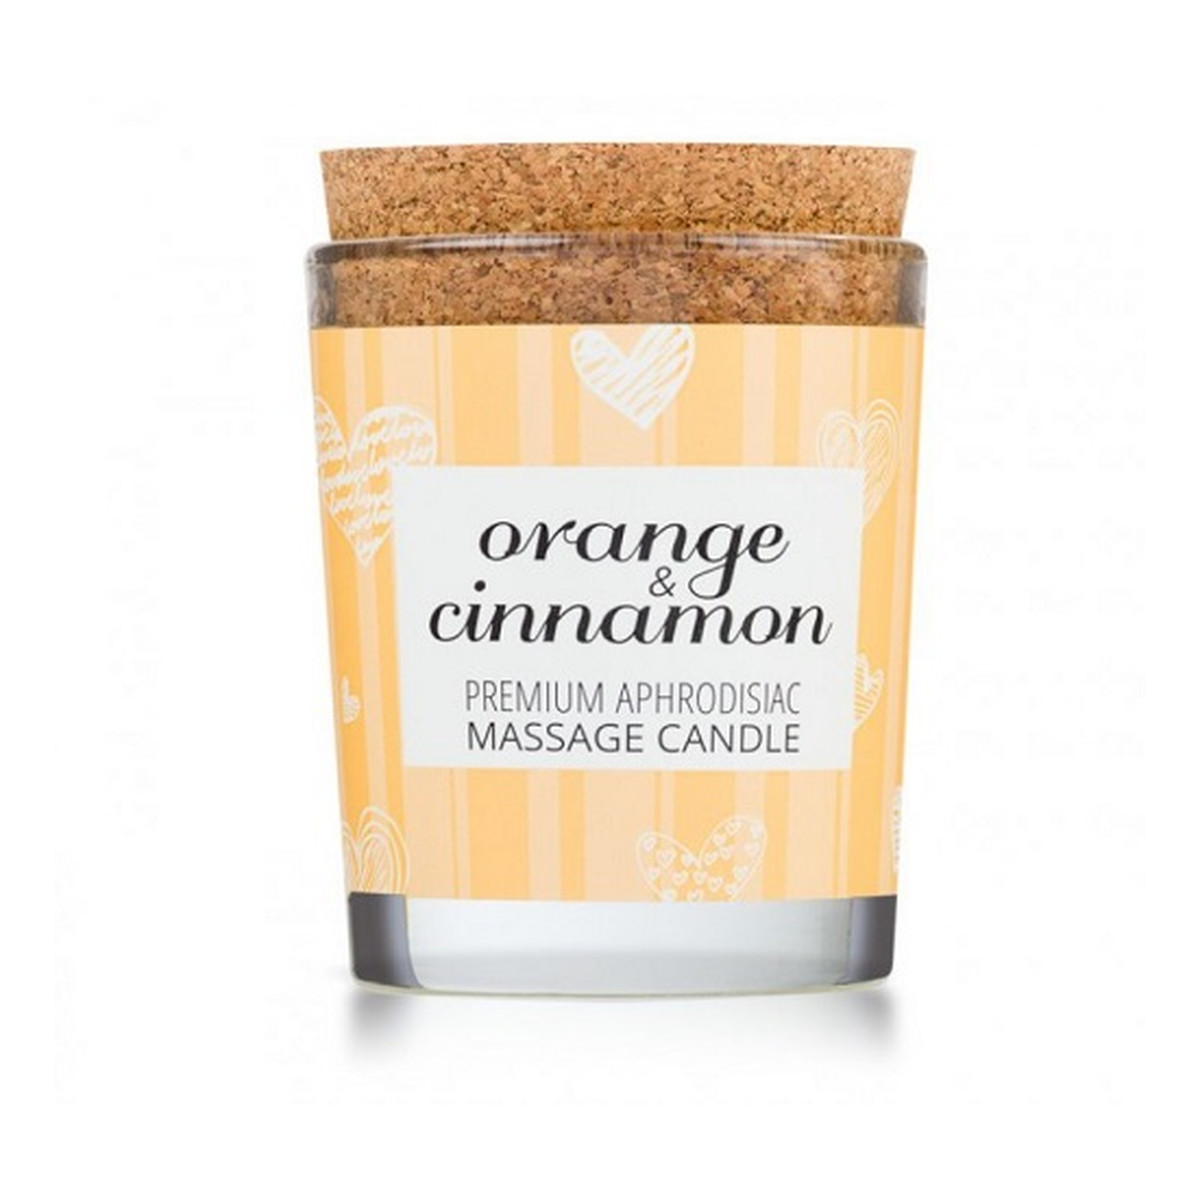 Magnetifico Enjoy it! massage candle świeca do masażu pomarańcza & cynamon 70ml